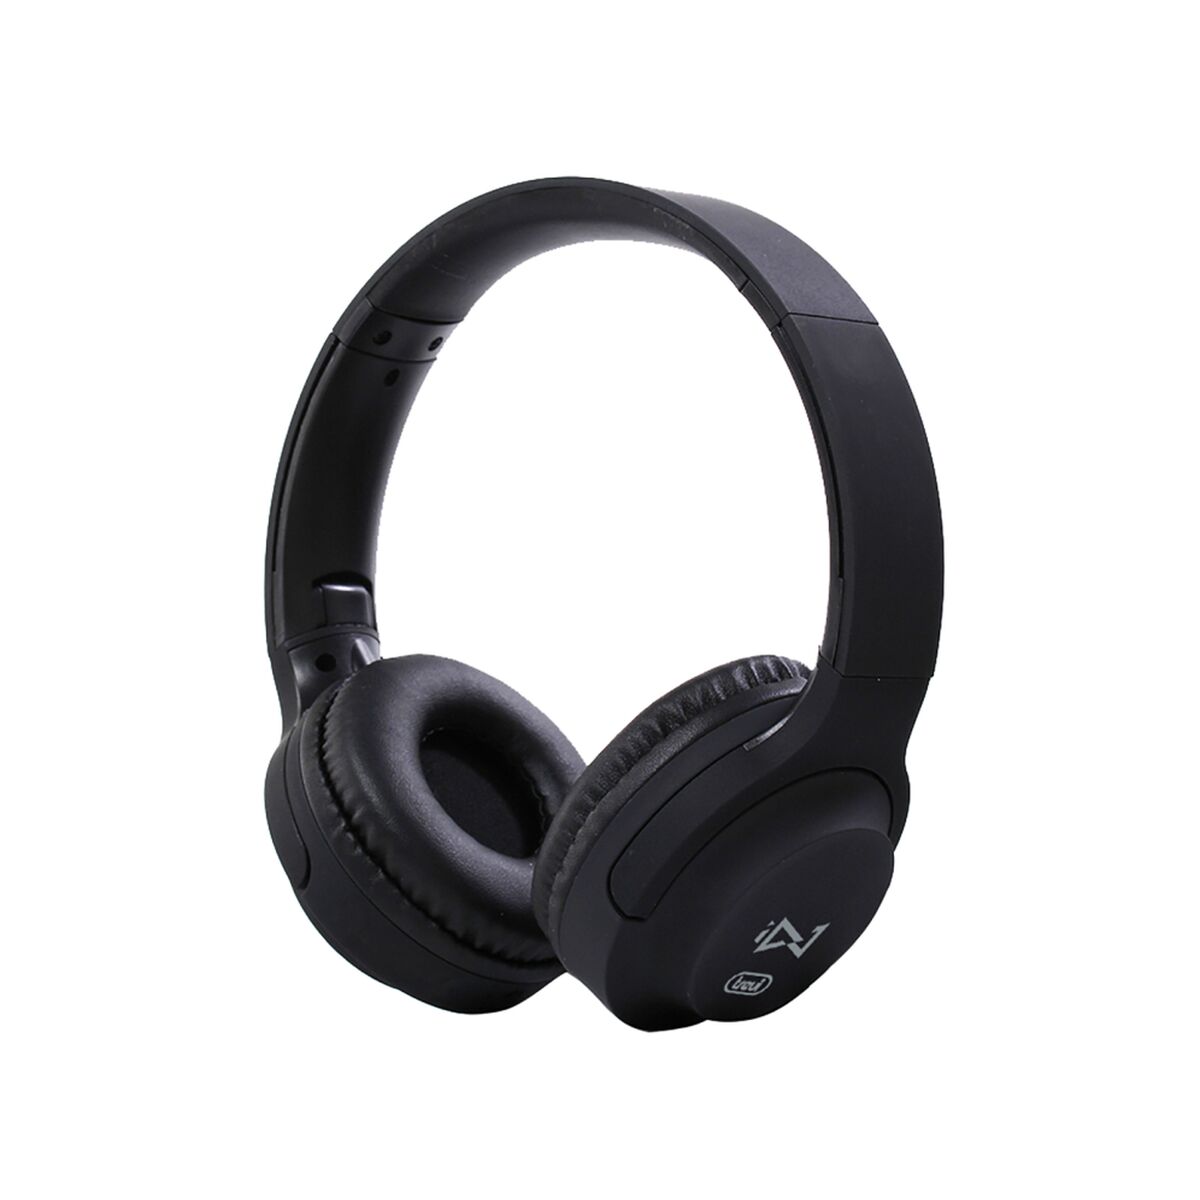 Osta tuote On-Ear- kuulokkeet Trevi DJ 601 M Musta verkkokaupastamme Korhone: Tietokoneet & Elektroniikka 10% alennuksella koodilla KORHONE